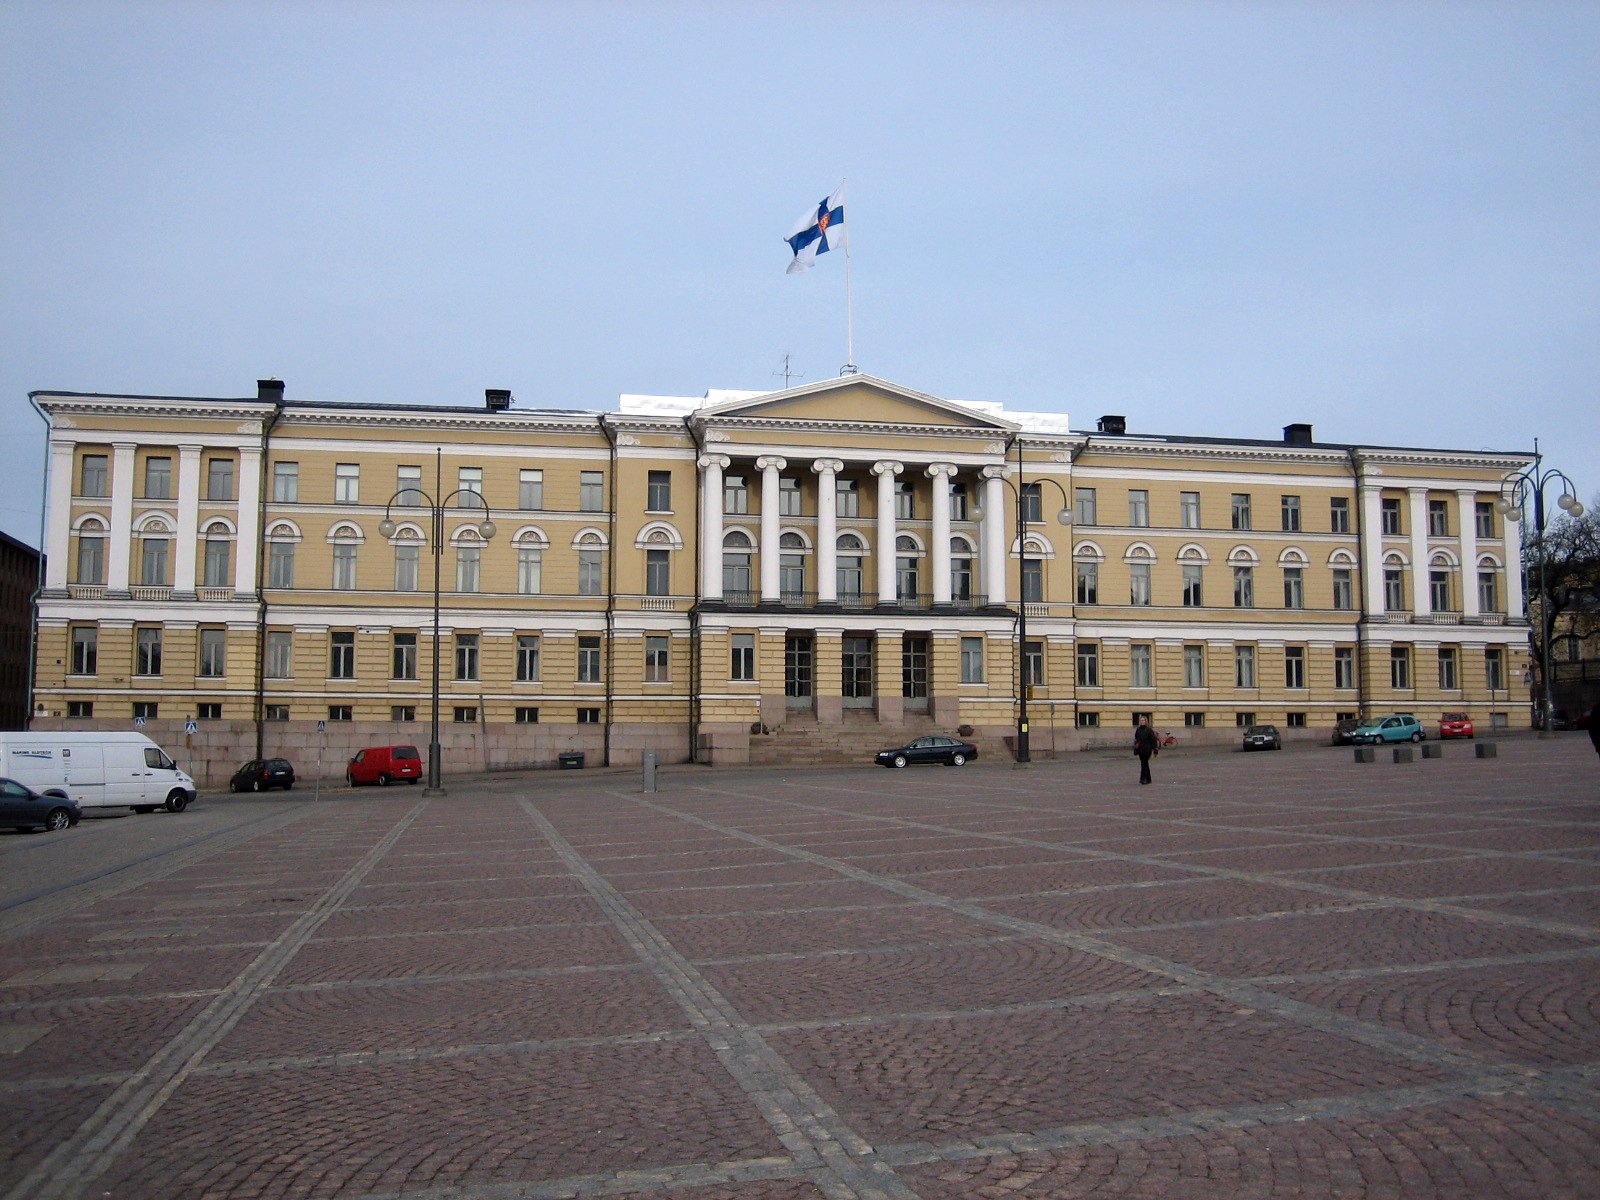 Helsinki University